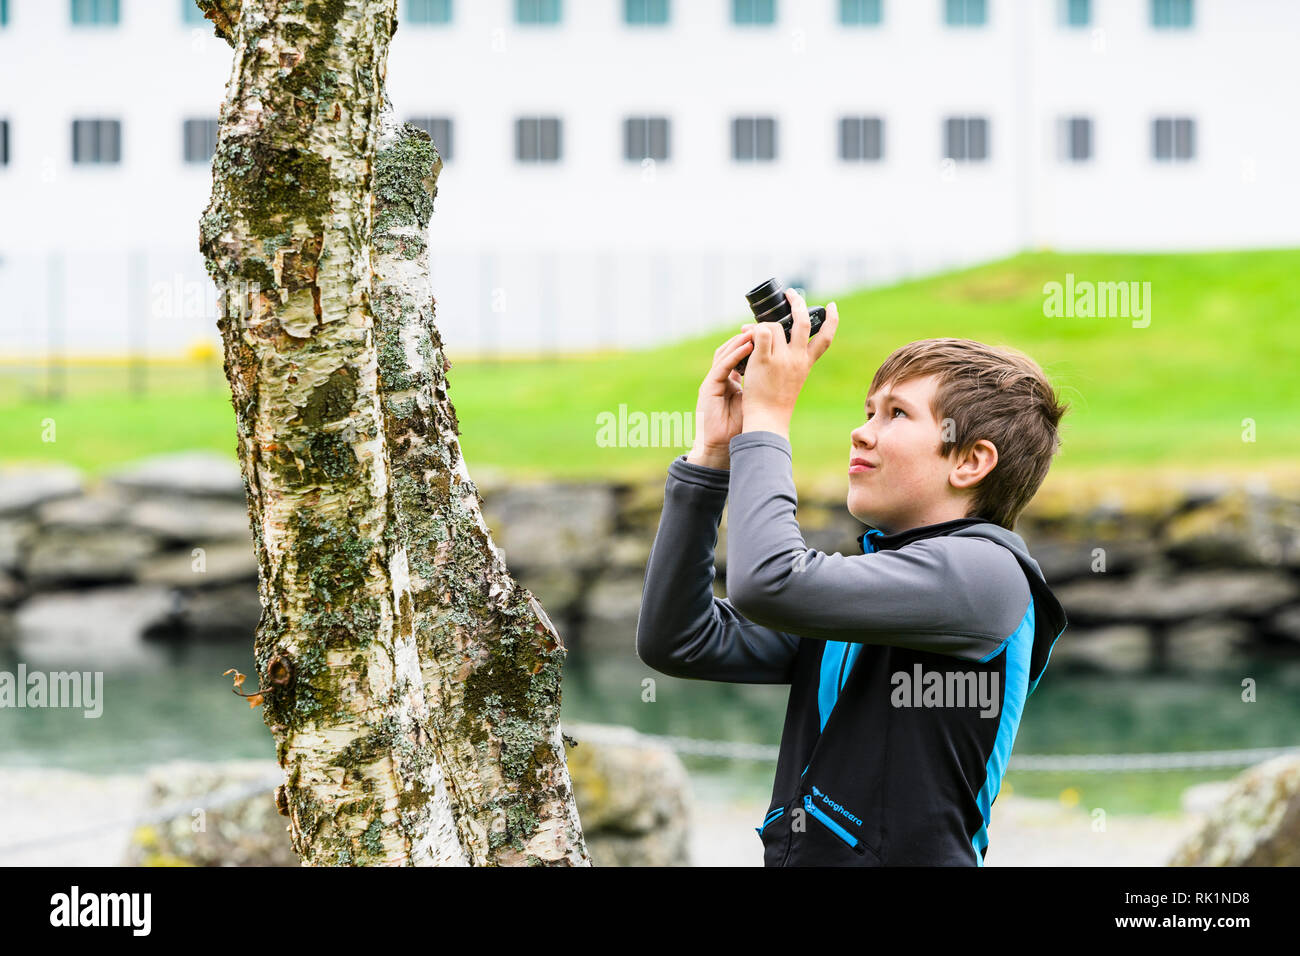 Cándido retrato de muchacho fotografiar árbol con cámara digital, imagen en color Foto de stock